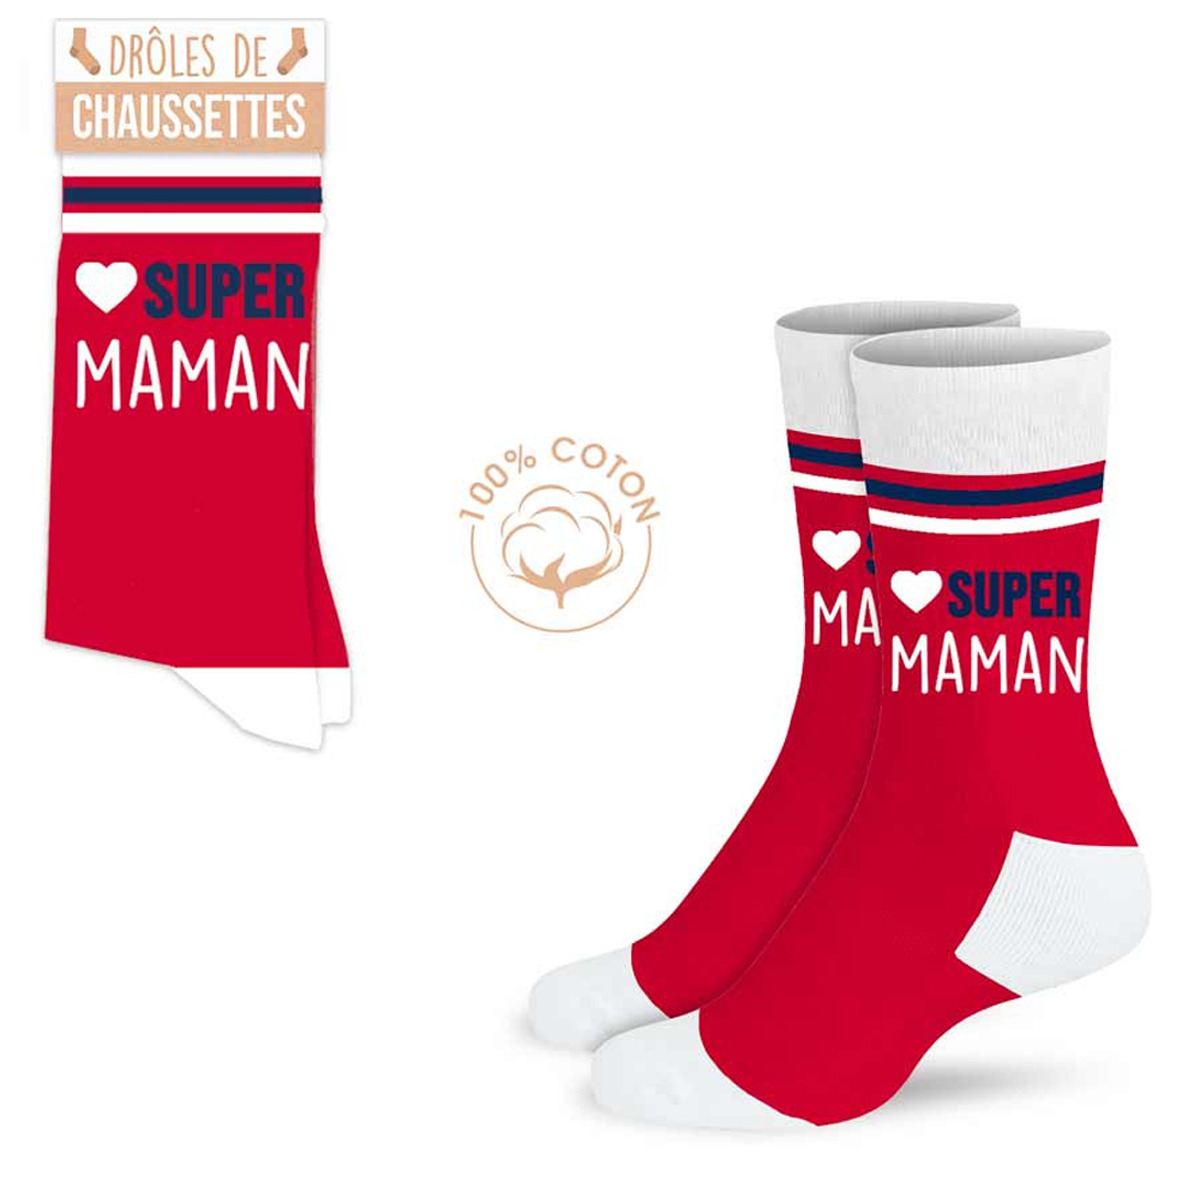 Chaussettes coton tendresse \'Super Maman\' rouge - taille unique - [A0913]